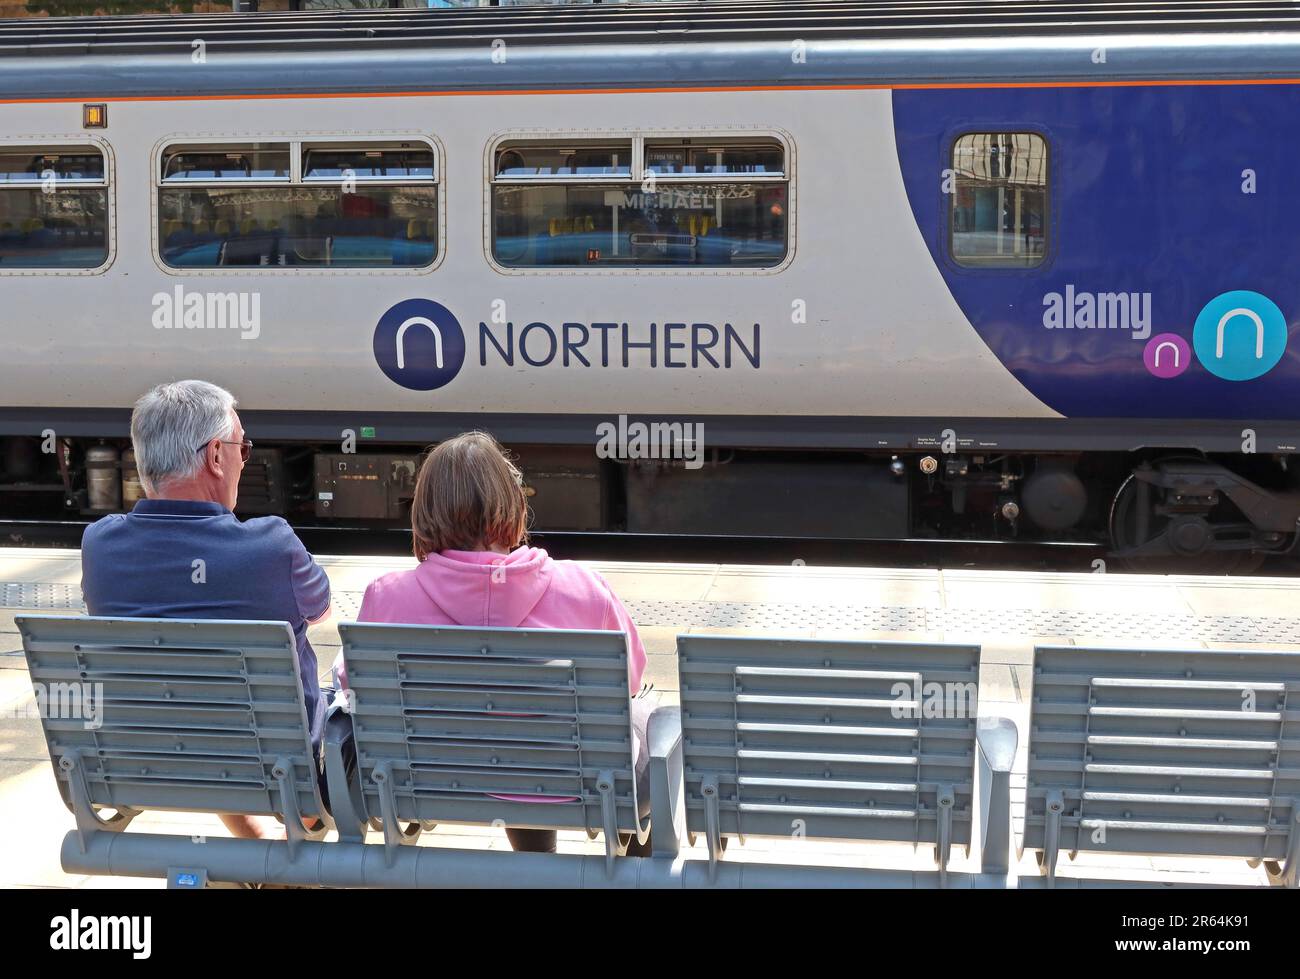 Ein Paar wartet darauf, dass ein Zug der Northern Franchise auf die Abfahrt vorbereitet wird, am Bahnhof Liverpool Lime Street, Merseyside, England, UK, L1 1JD Stockfoto